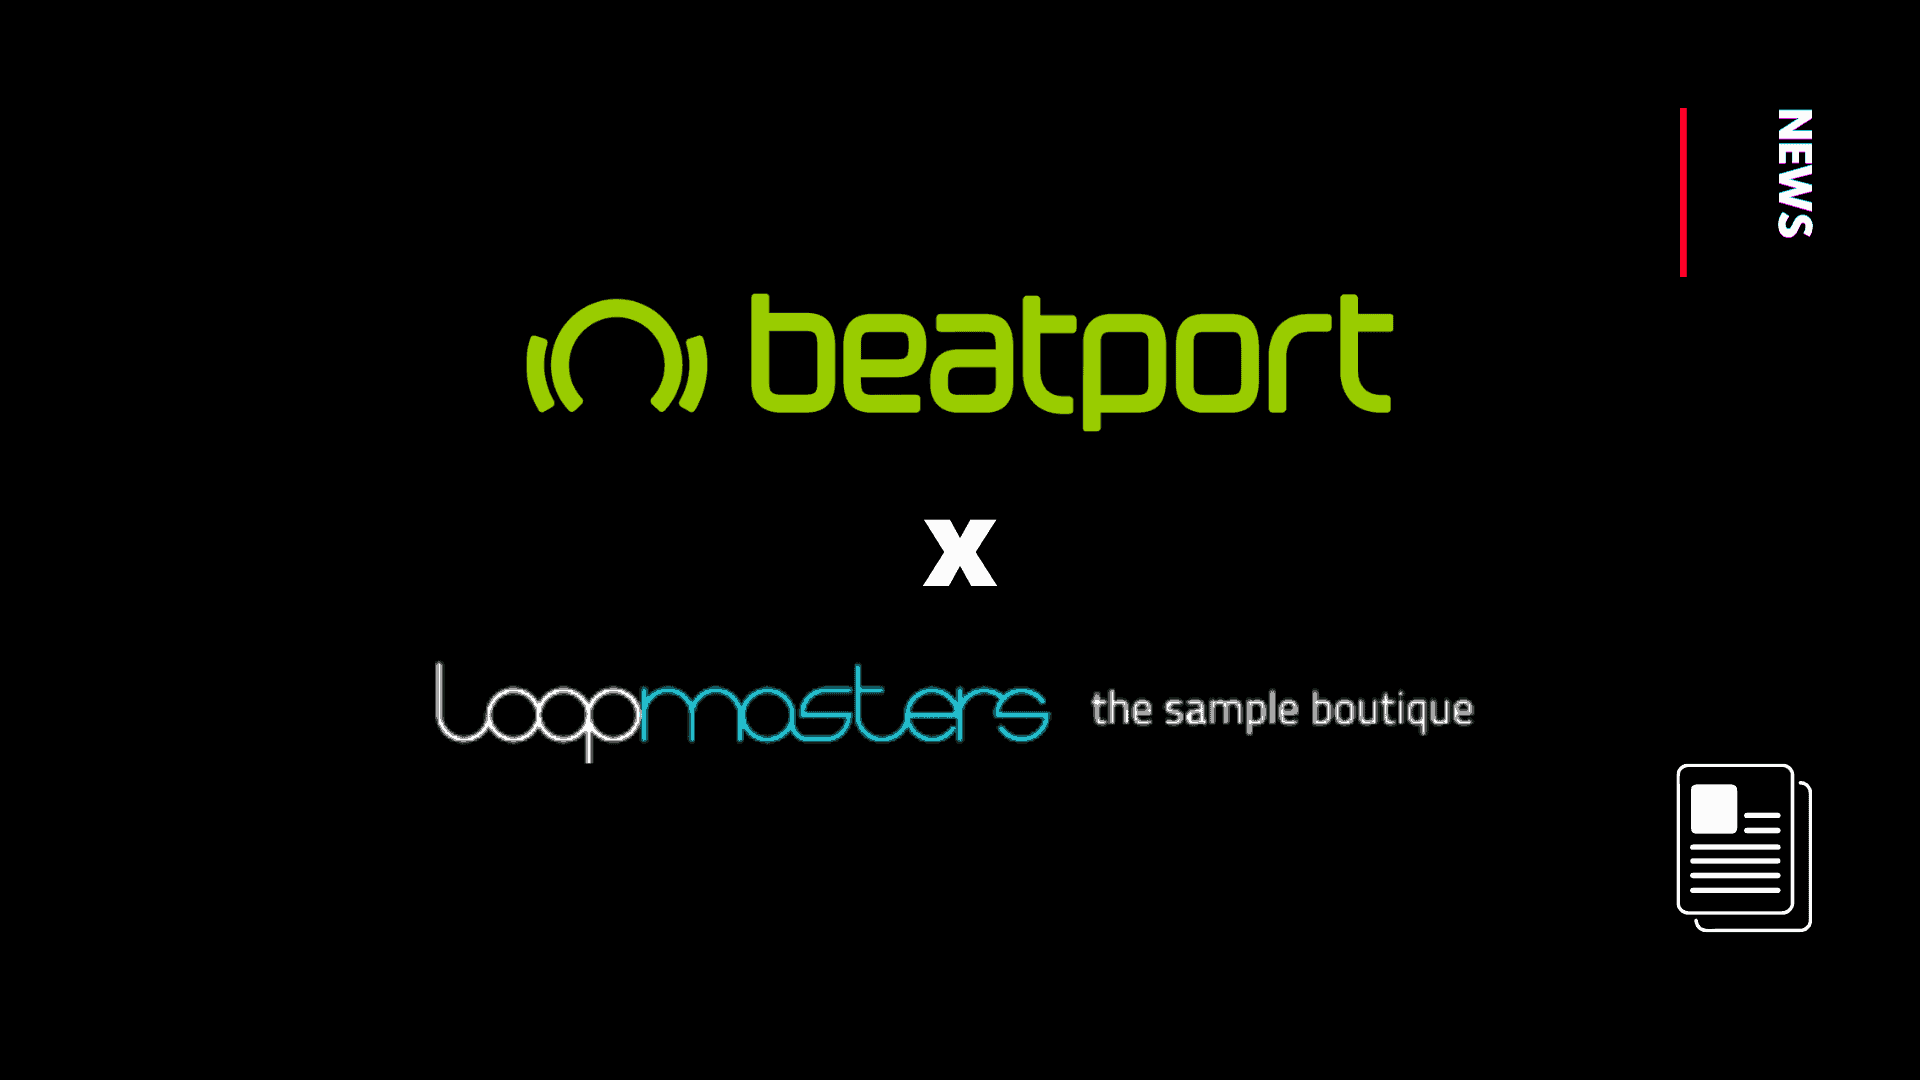 beatport acquires loopmasters